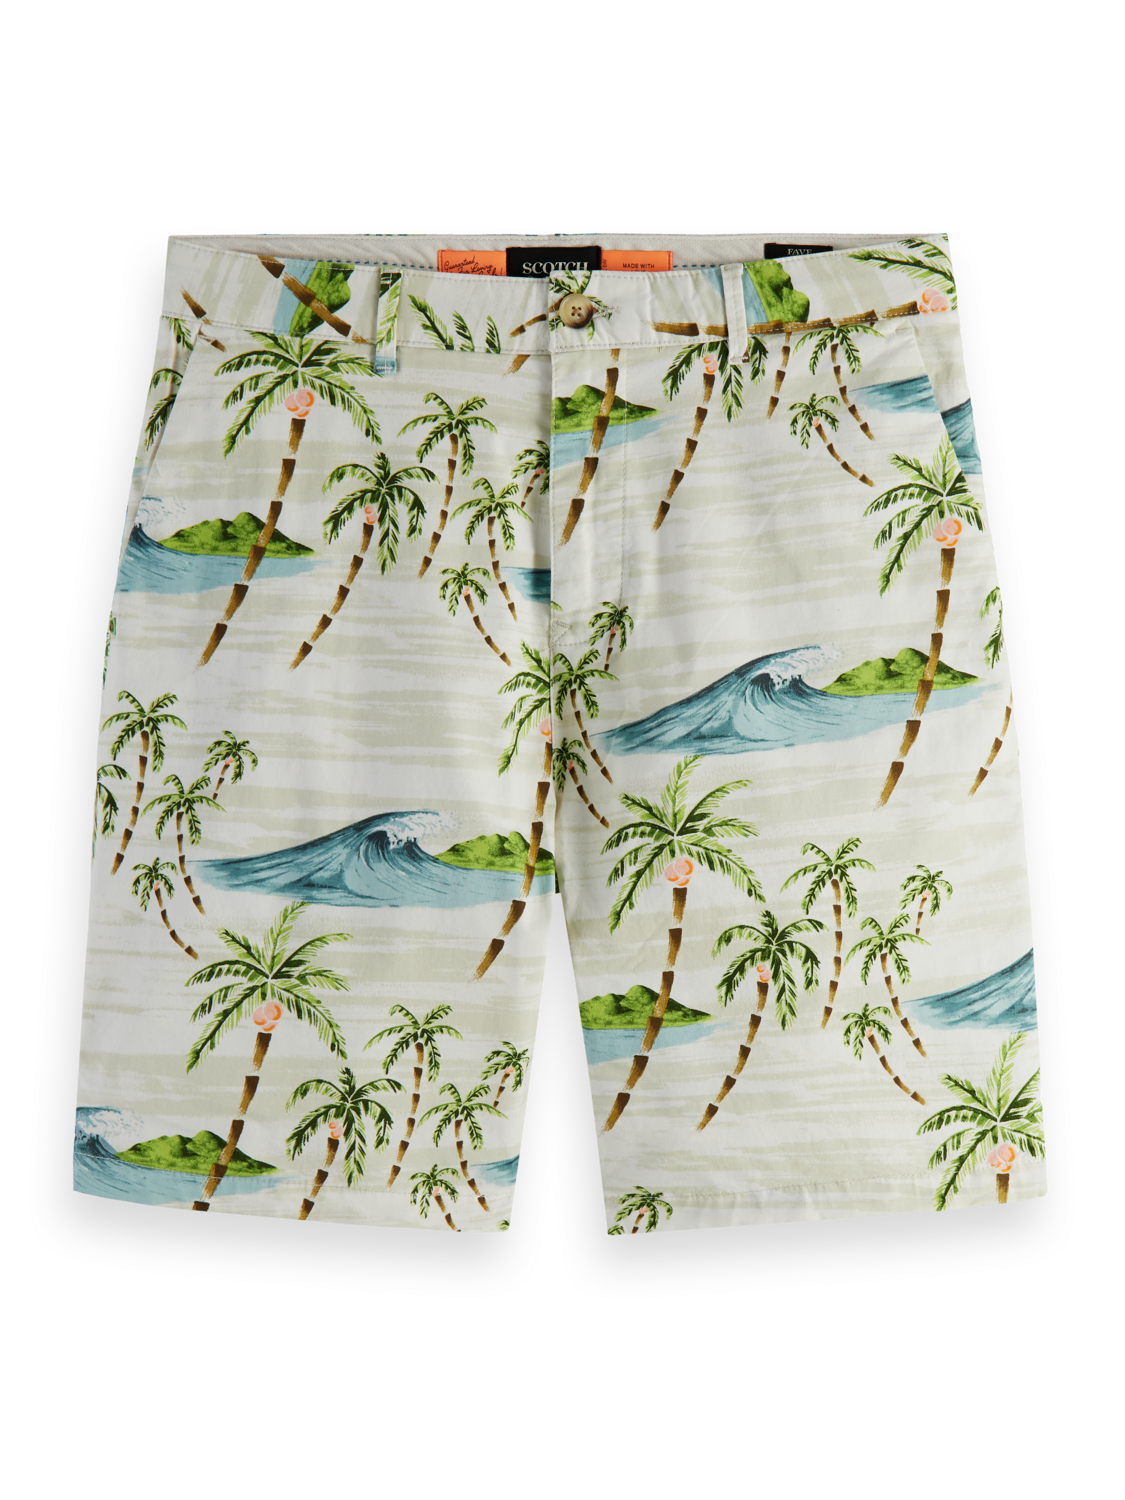 Scotch & Soda - Printed Pima Cotton Shorts - Two Pattern Options